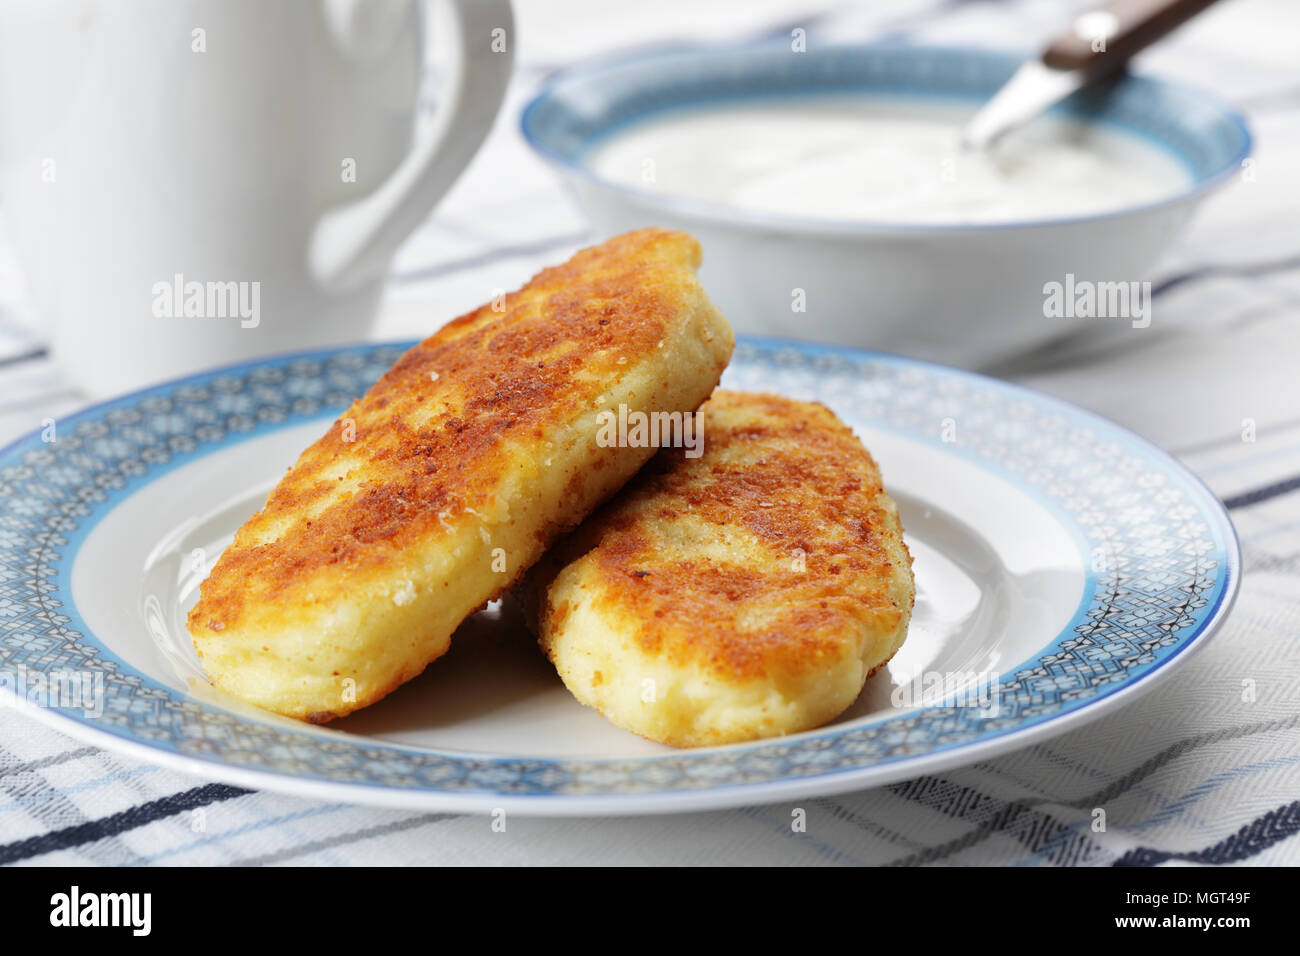 Zrazas, ukrainian potato patties with mushrooms Stock Photo